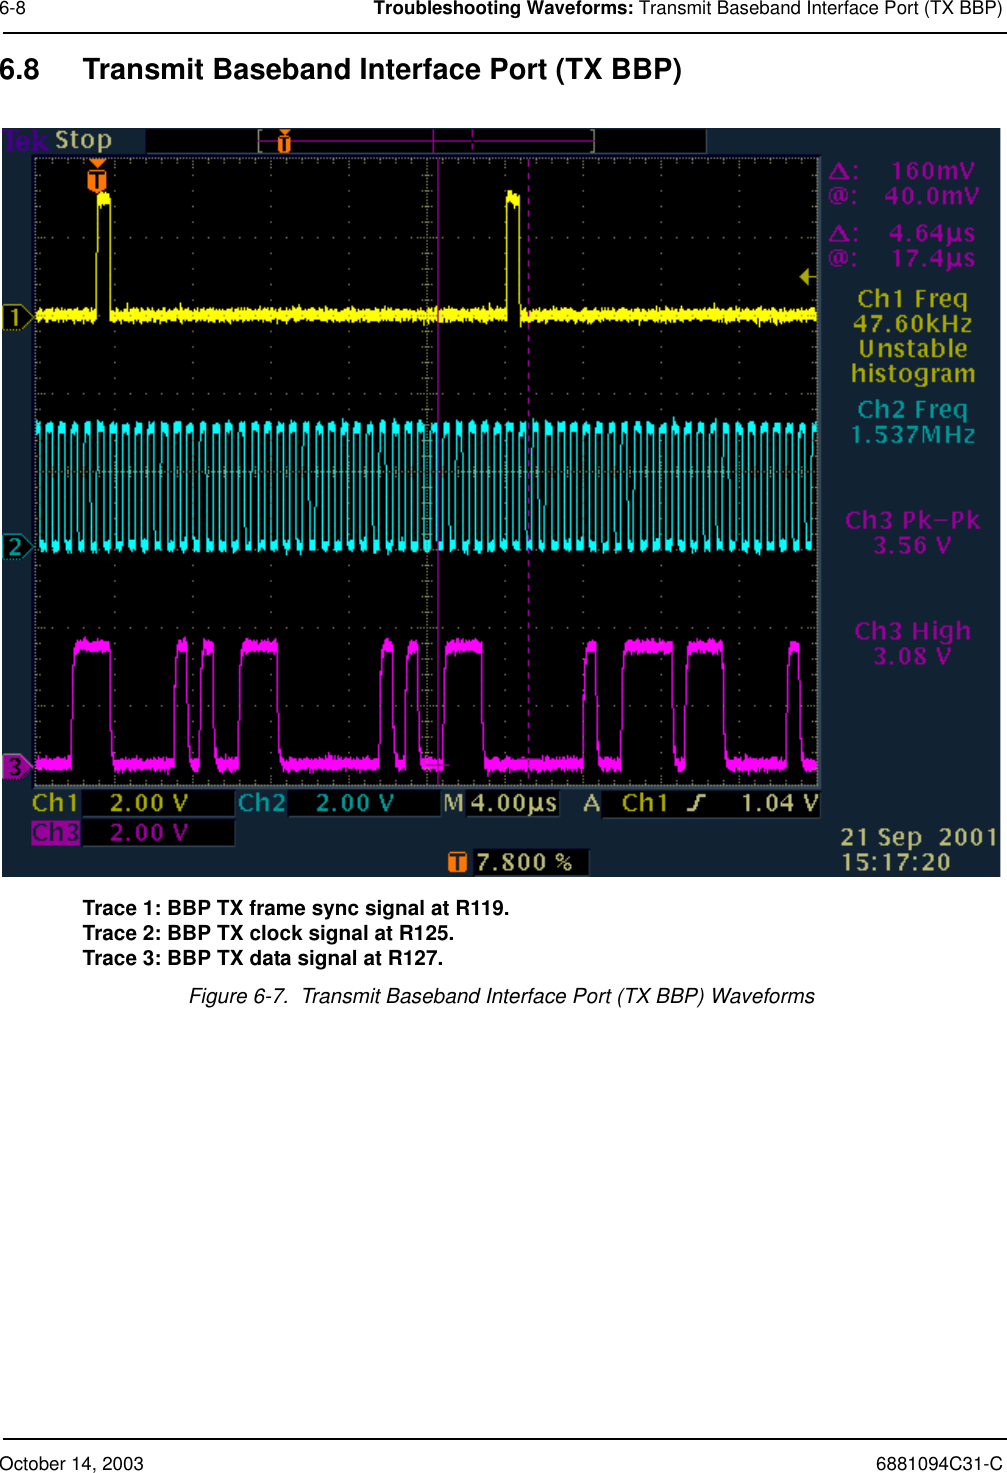 October 14, 2003 6881094C31-C6-8 Troubleshooting Waveforms: Transmit Baseband Interface Port (TX BBP)6.8 Transmit Baseband Interface Port (TX BBP)Trace 1: BBP TX frame sync signal at R119.Trace 2: BBP TX clock signal at R125.Trace 3: BBP TX data signal at R127.Figure 6-7.  Transmit Baseband Interface Port (TX BBP) Waveforms